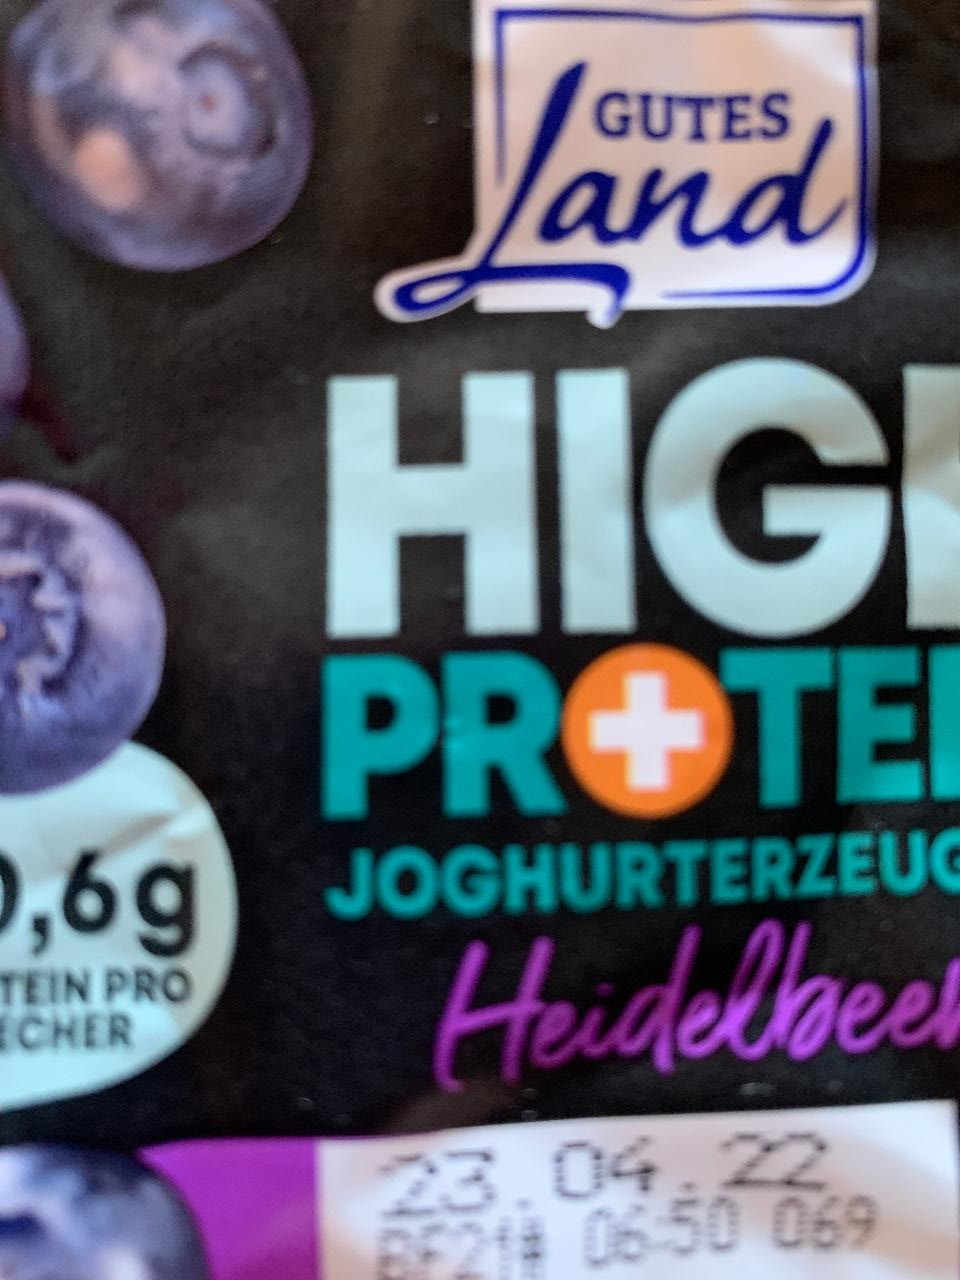 Fotografie - High protein joghurterzeugnis Heidelbeere Gutes Land